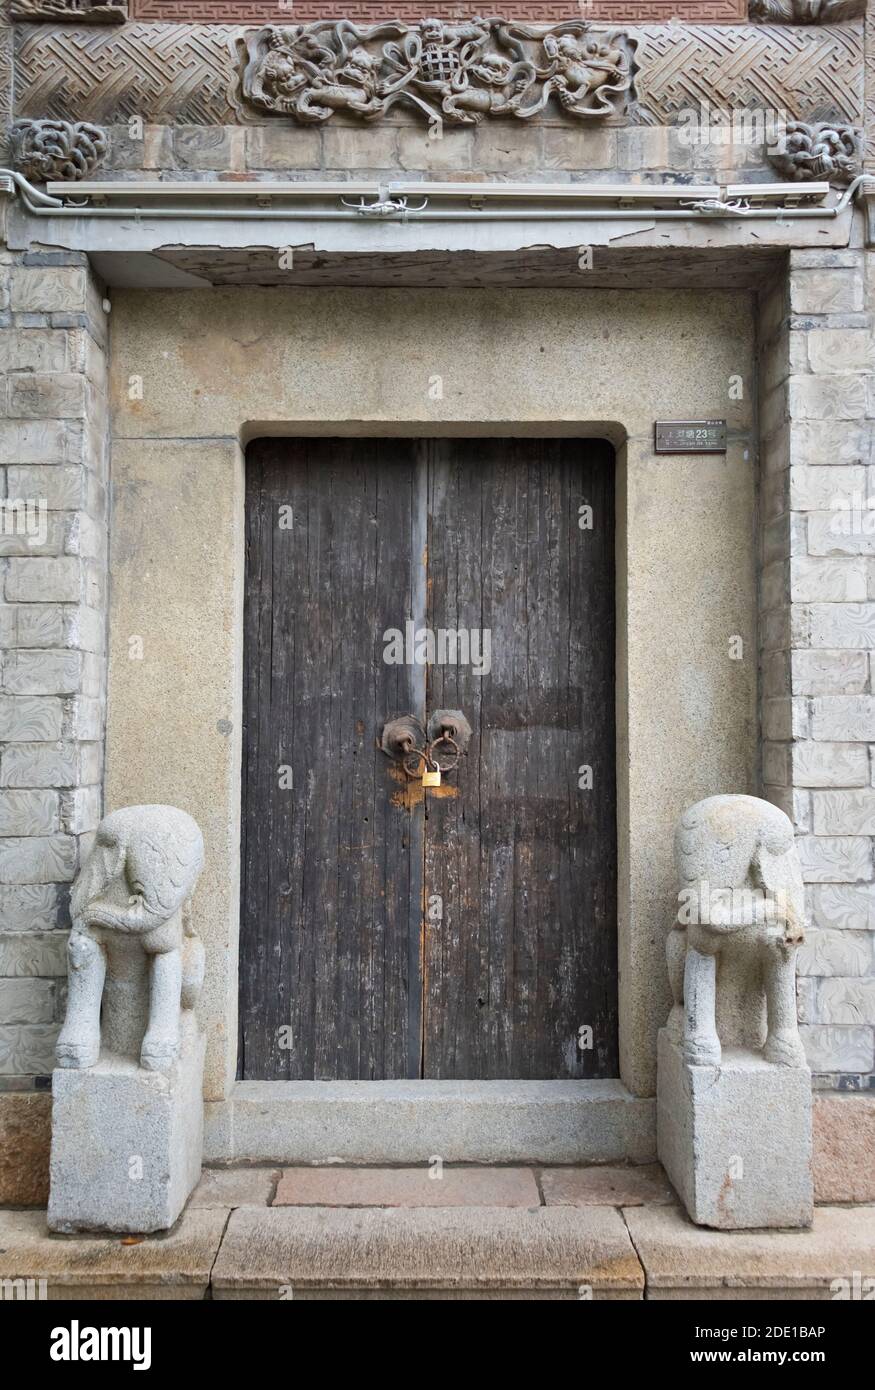 Statues en pierre par la porte en bois d'une maison traditionnelle dans la vieille ville de Huishan, Wuxi, province de Jiangsu, Chine Banque D'Images